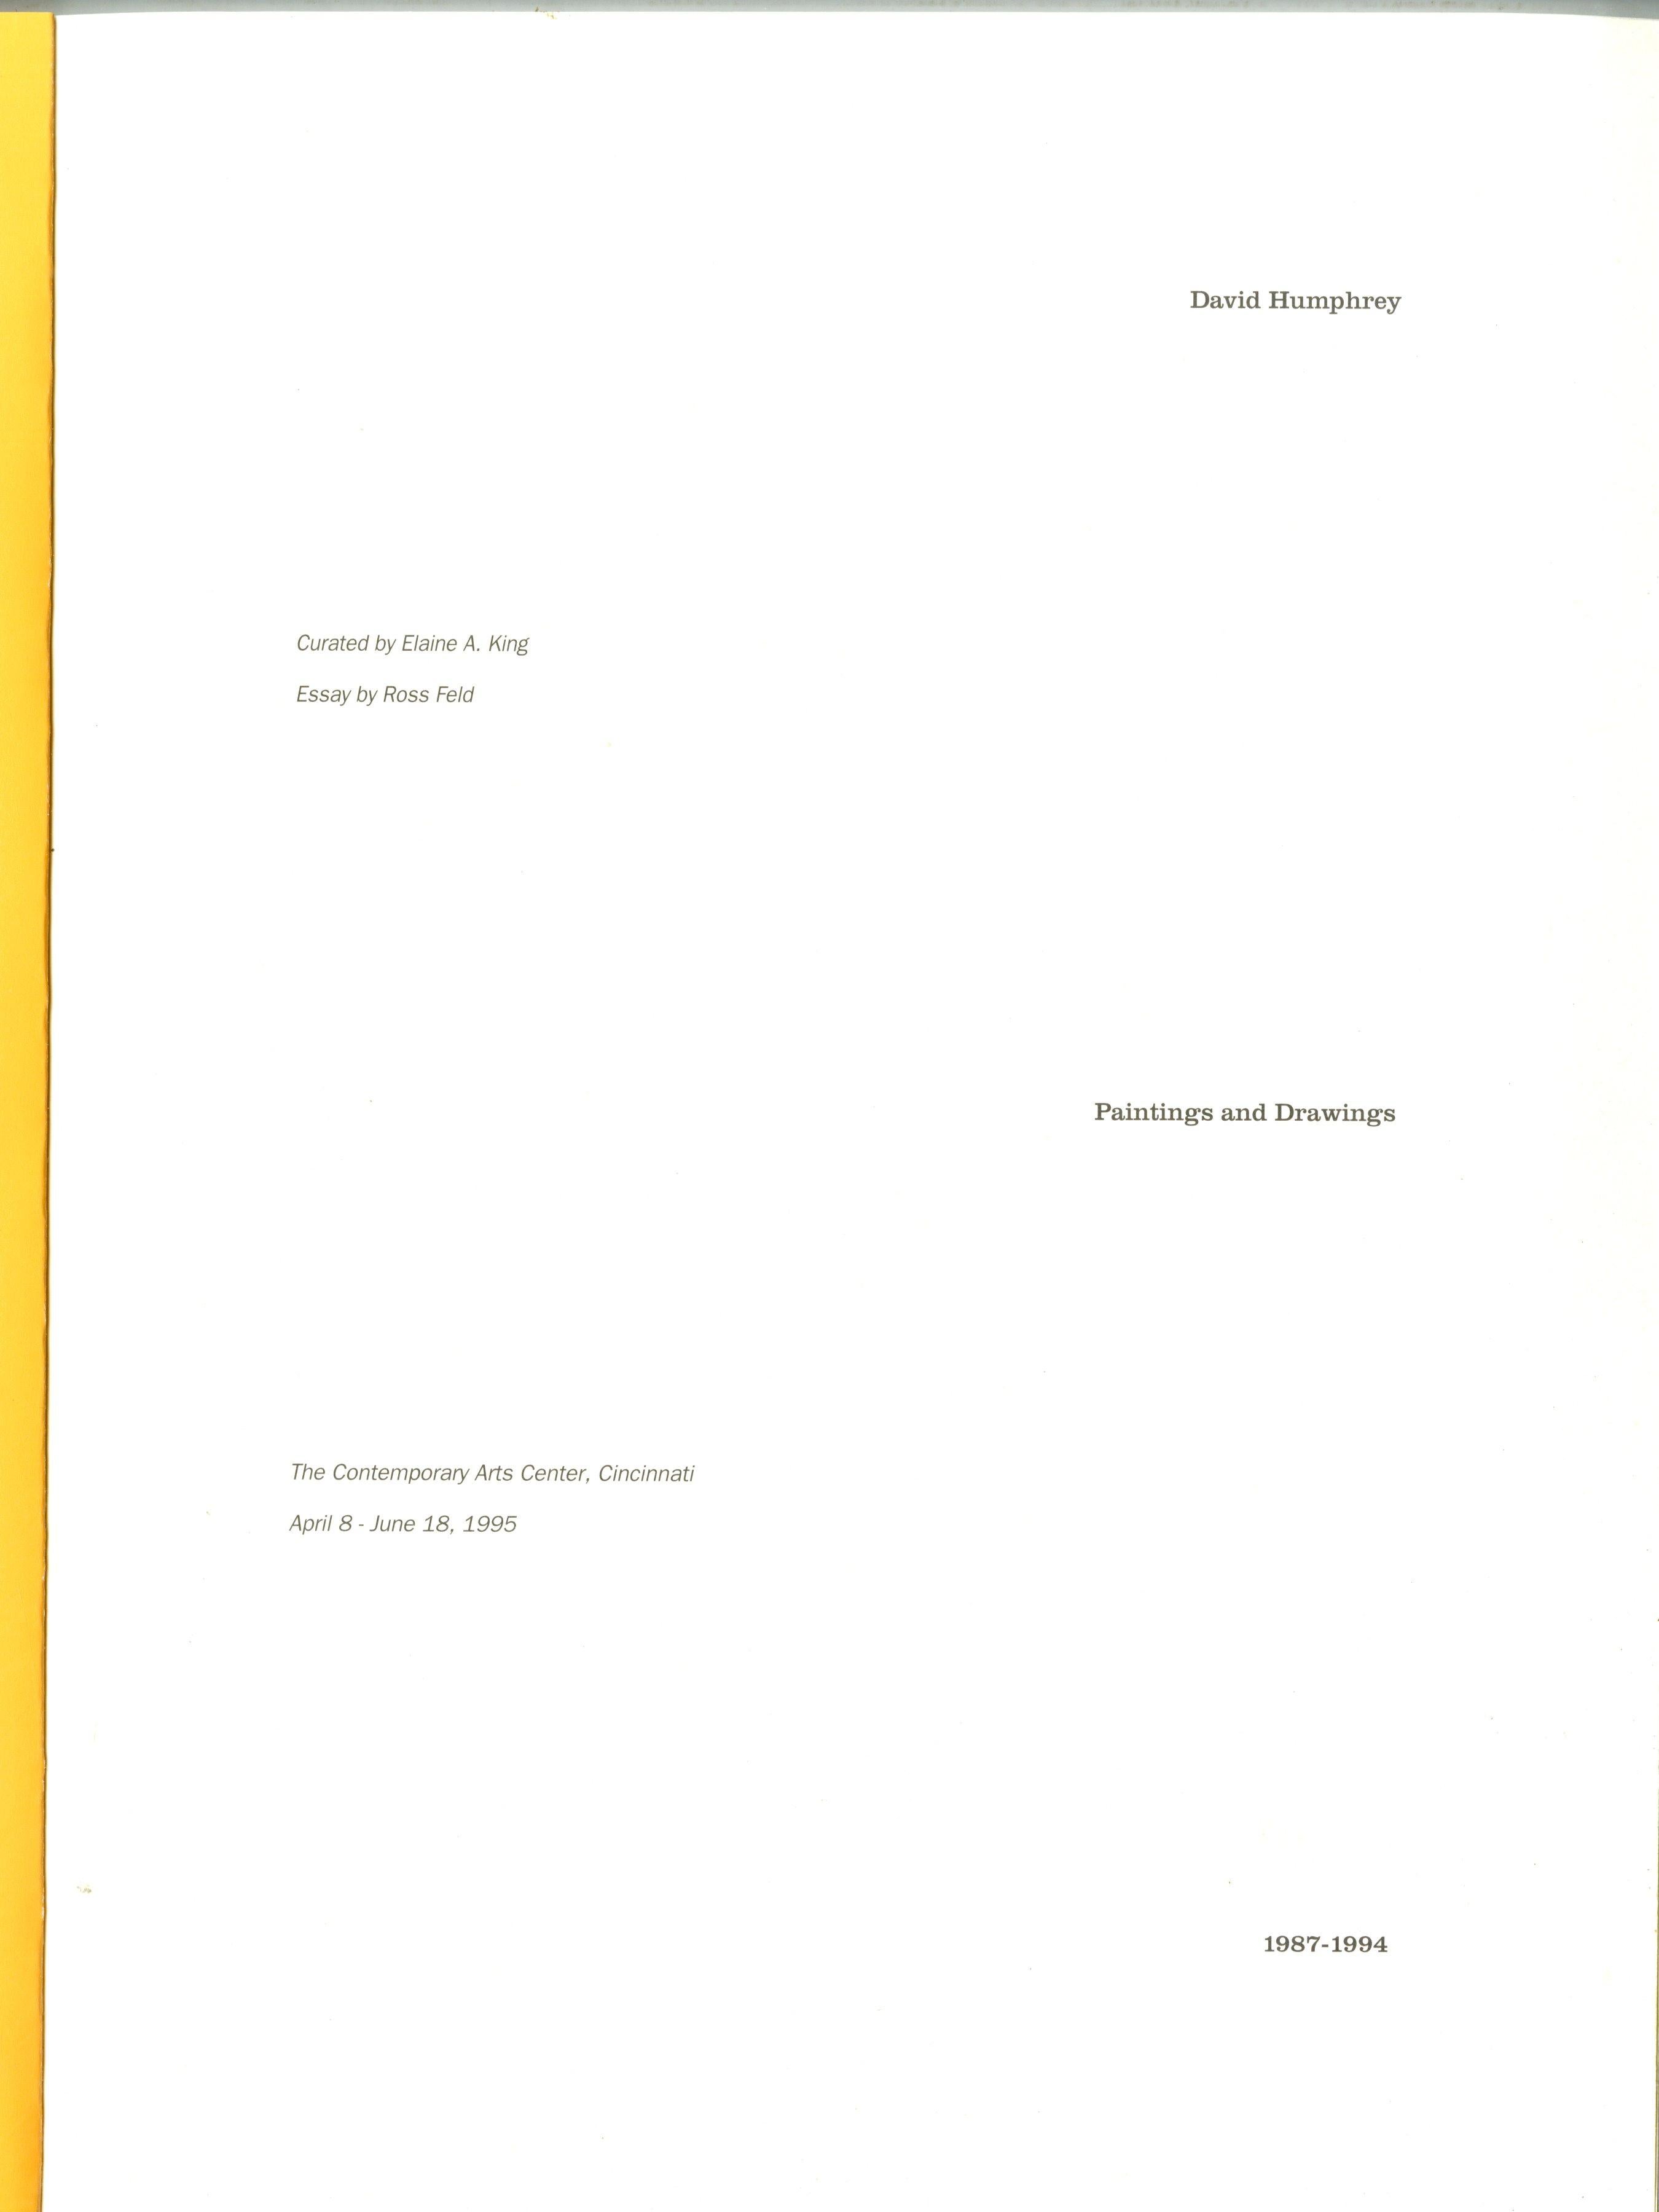 David Humphrey
Erinnerungen an Florida, 1992
Ölstift, Emaille auf handgeschöpftem Papier (Label des Contemporary Art Center of Cincinnati auf der Rückseite des Rahmens)
Signiert auf der Rückseite
29 × 43 1/2 × 1 Zoll
Ungerahmt
Dies ist ein